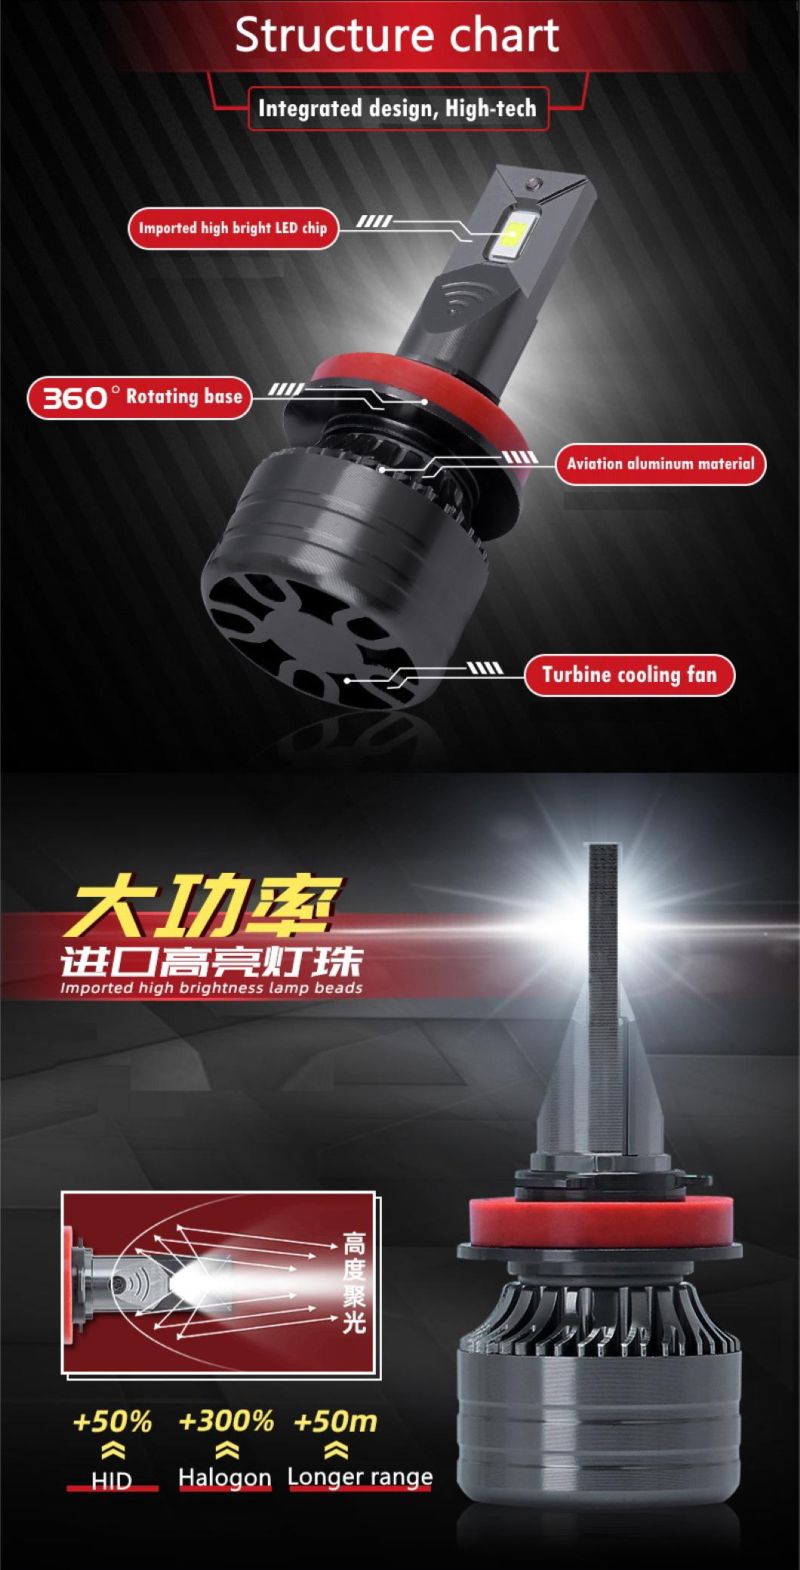 Hot Sale LED Headlight Kits 9005 9006 9012 H1 Head Light Bulb Auto Car H7 Car Bulb LED H7 Headlight